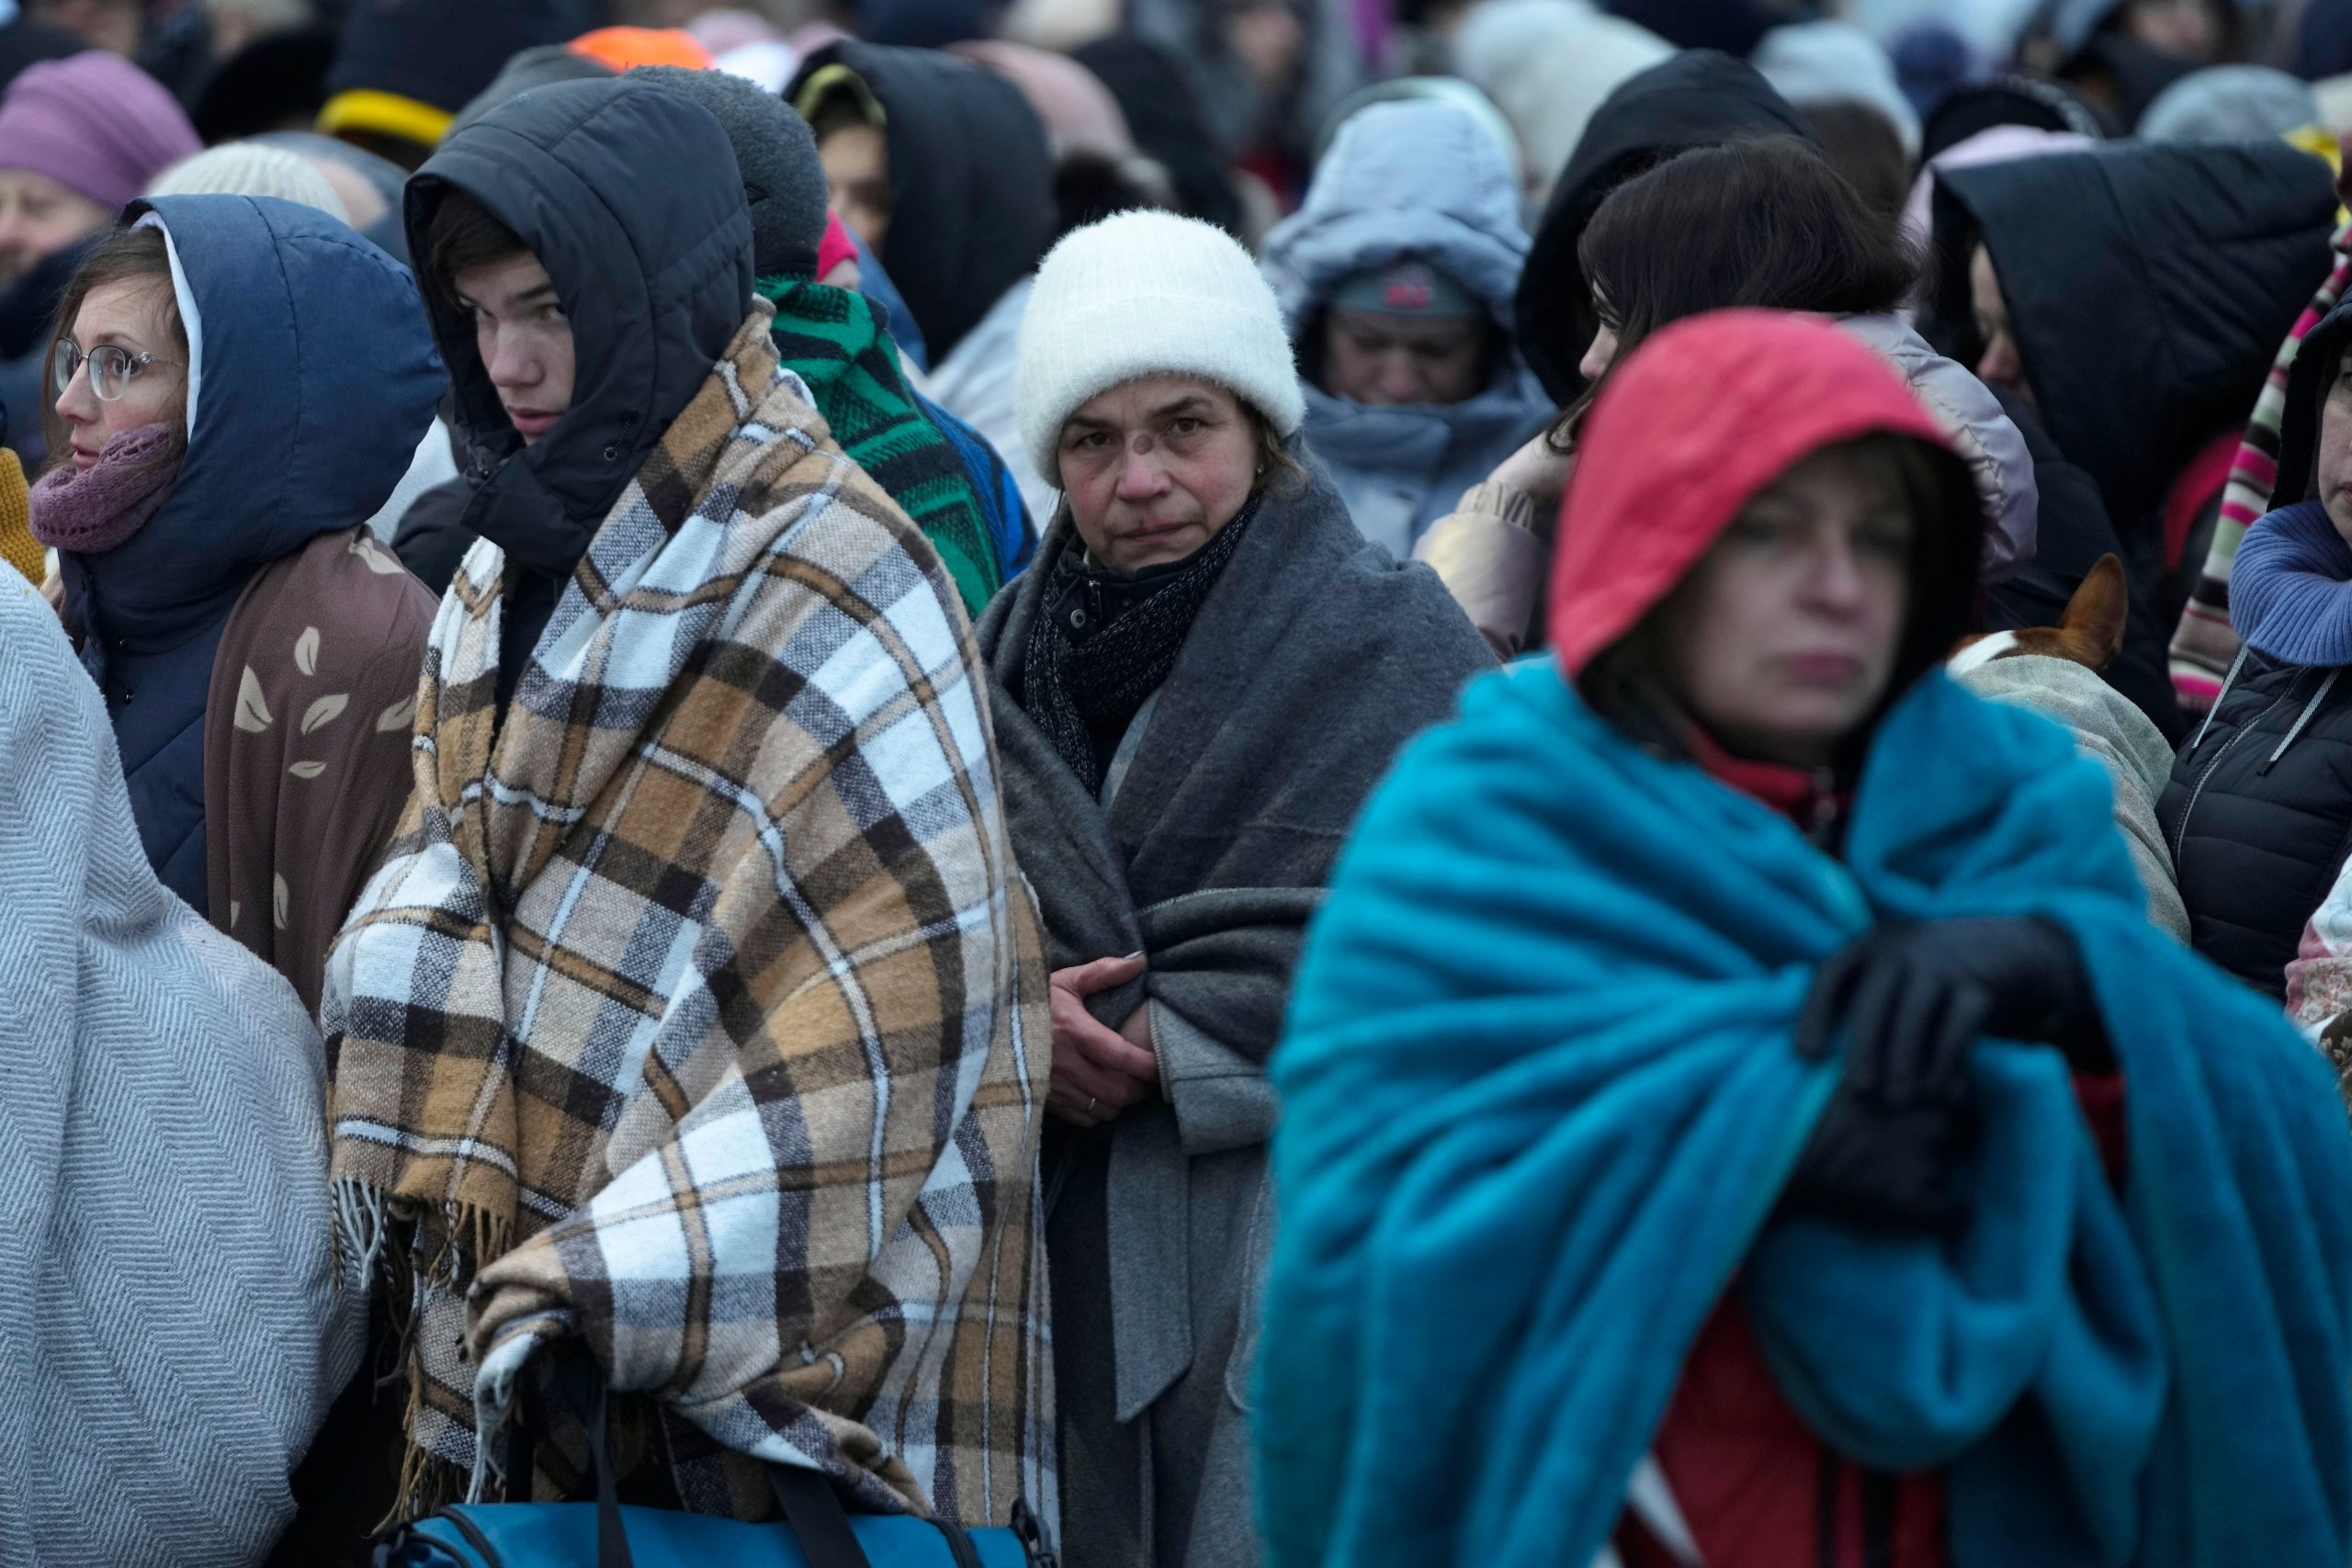 Ukraine refugee esitmate passes worst-case U.N. estimate